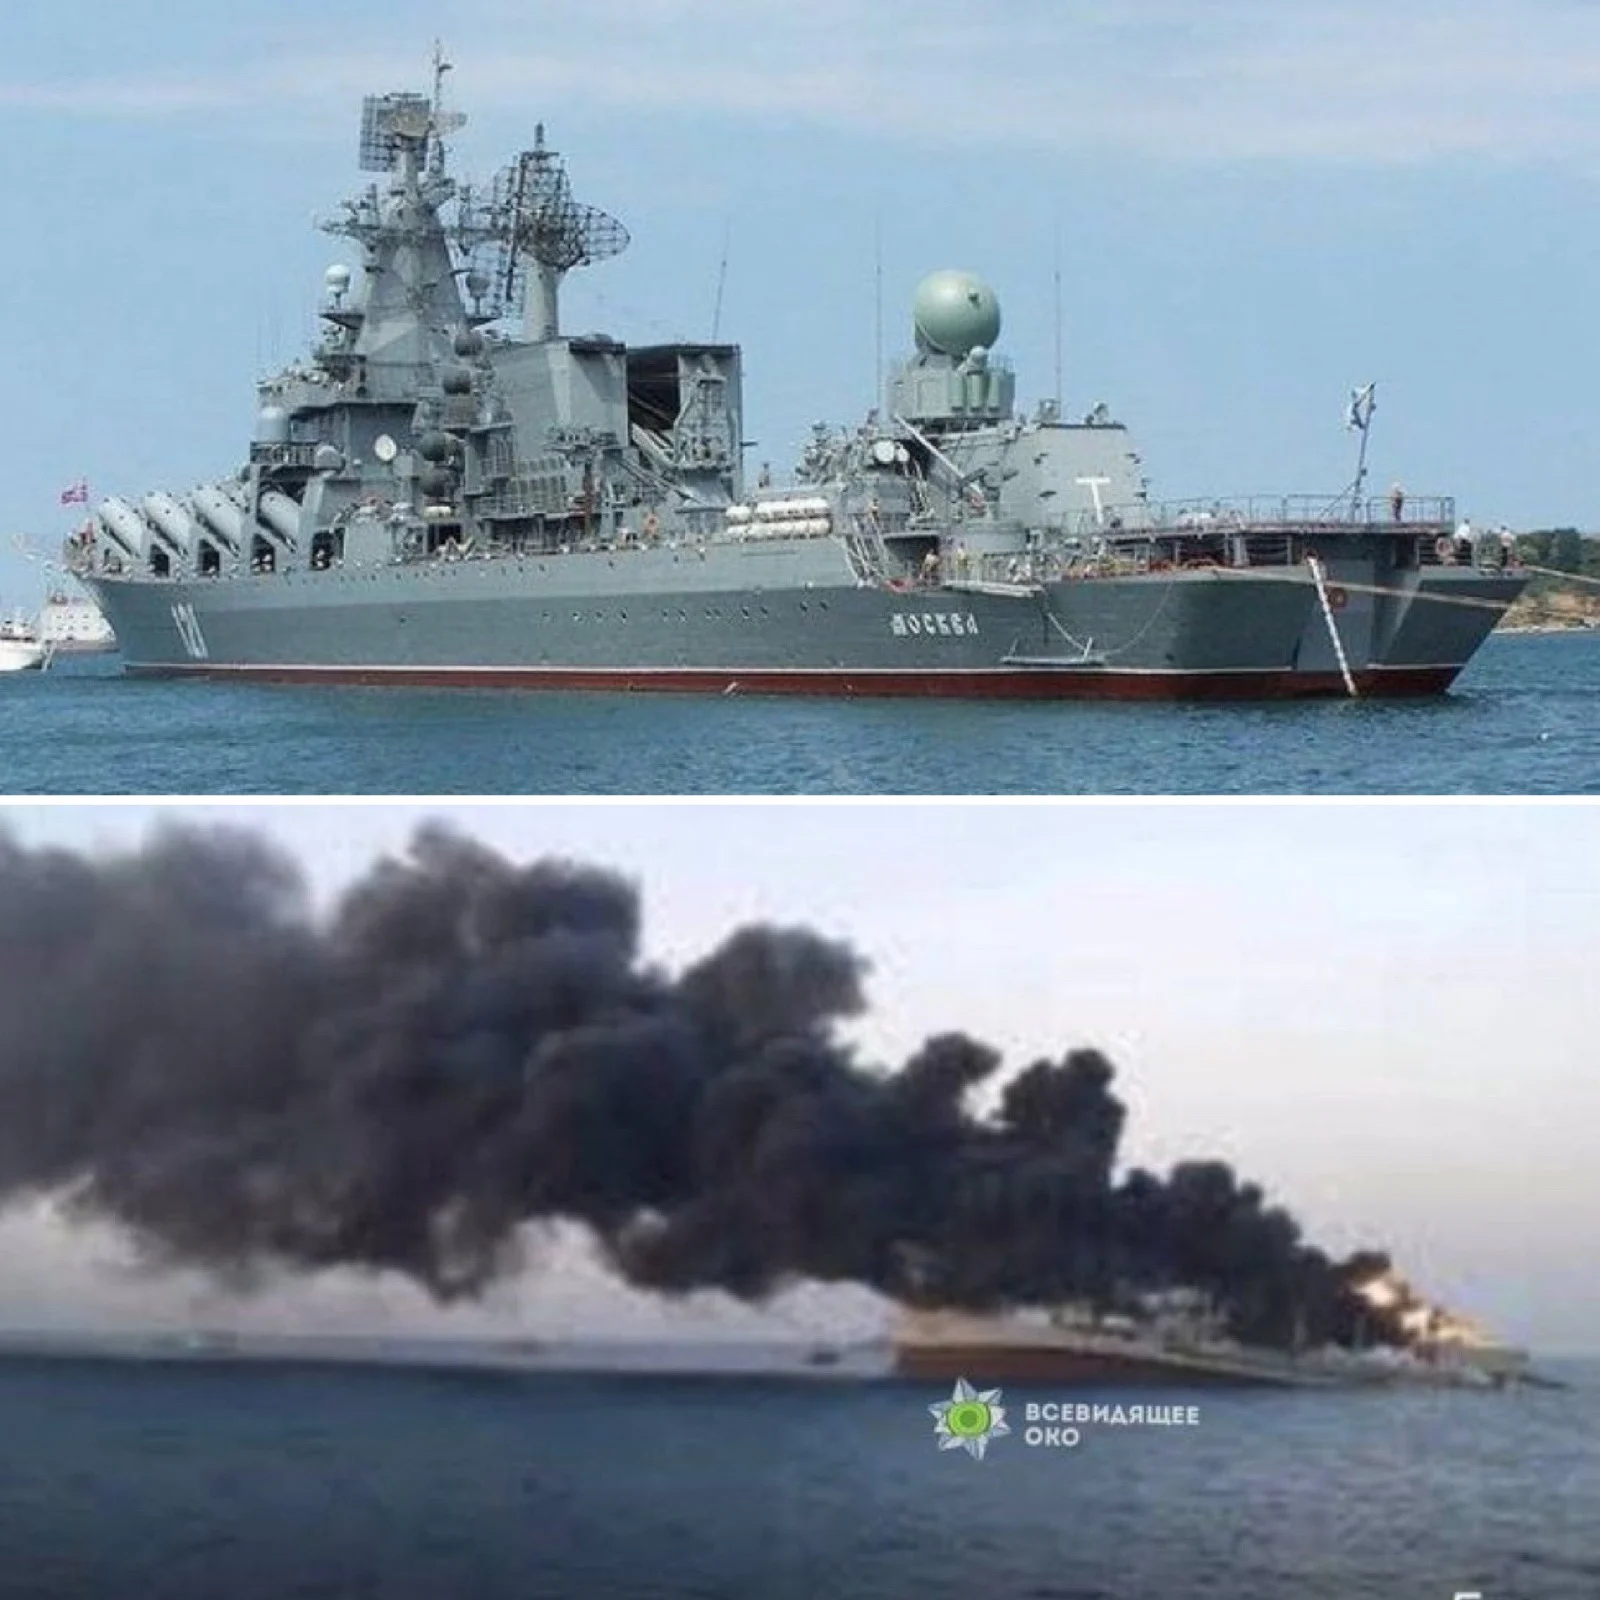 אוניית המלחמה הרוסית ''מוסקבה'' שניזוקה קשות